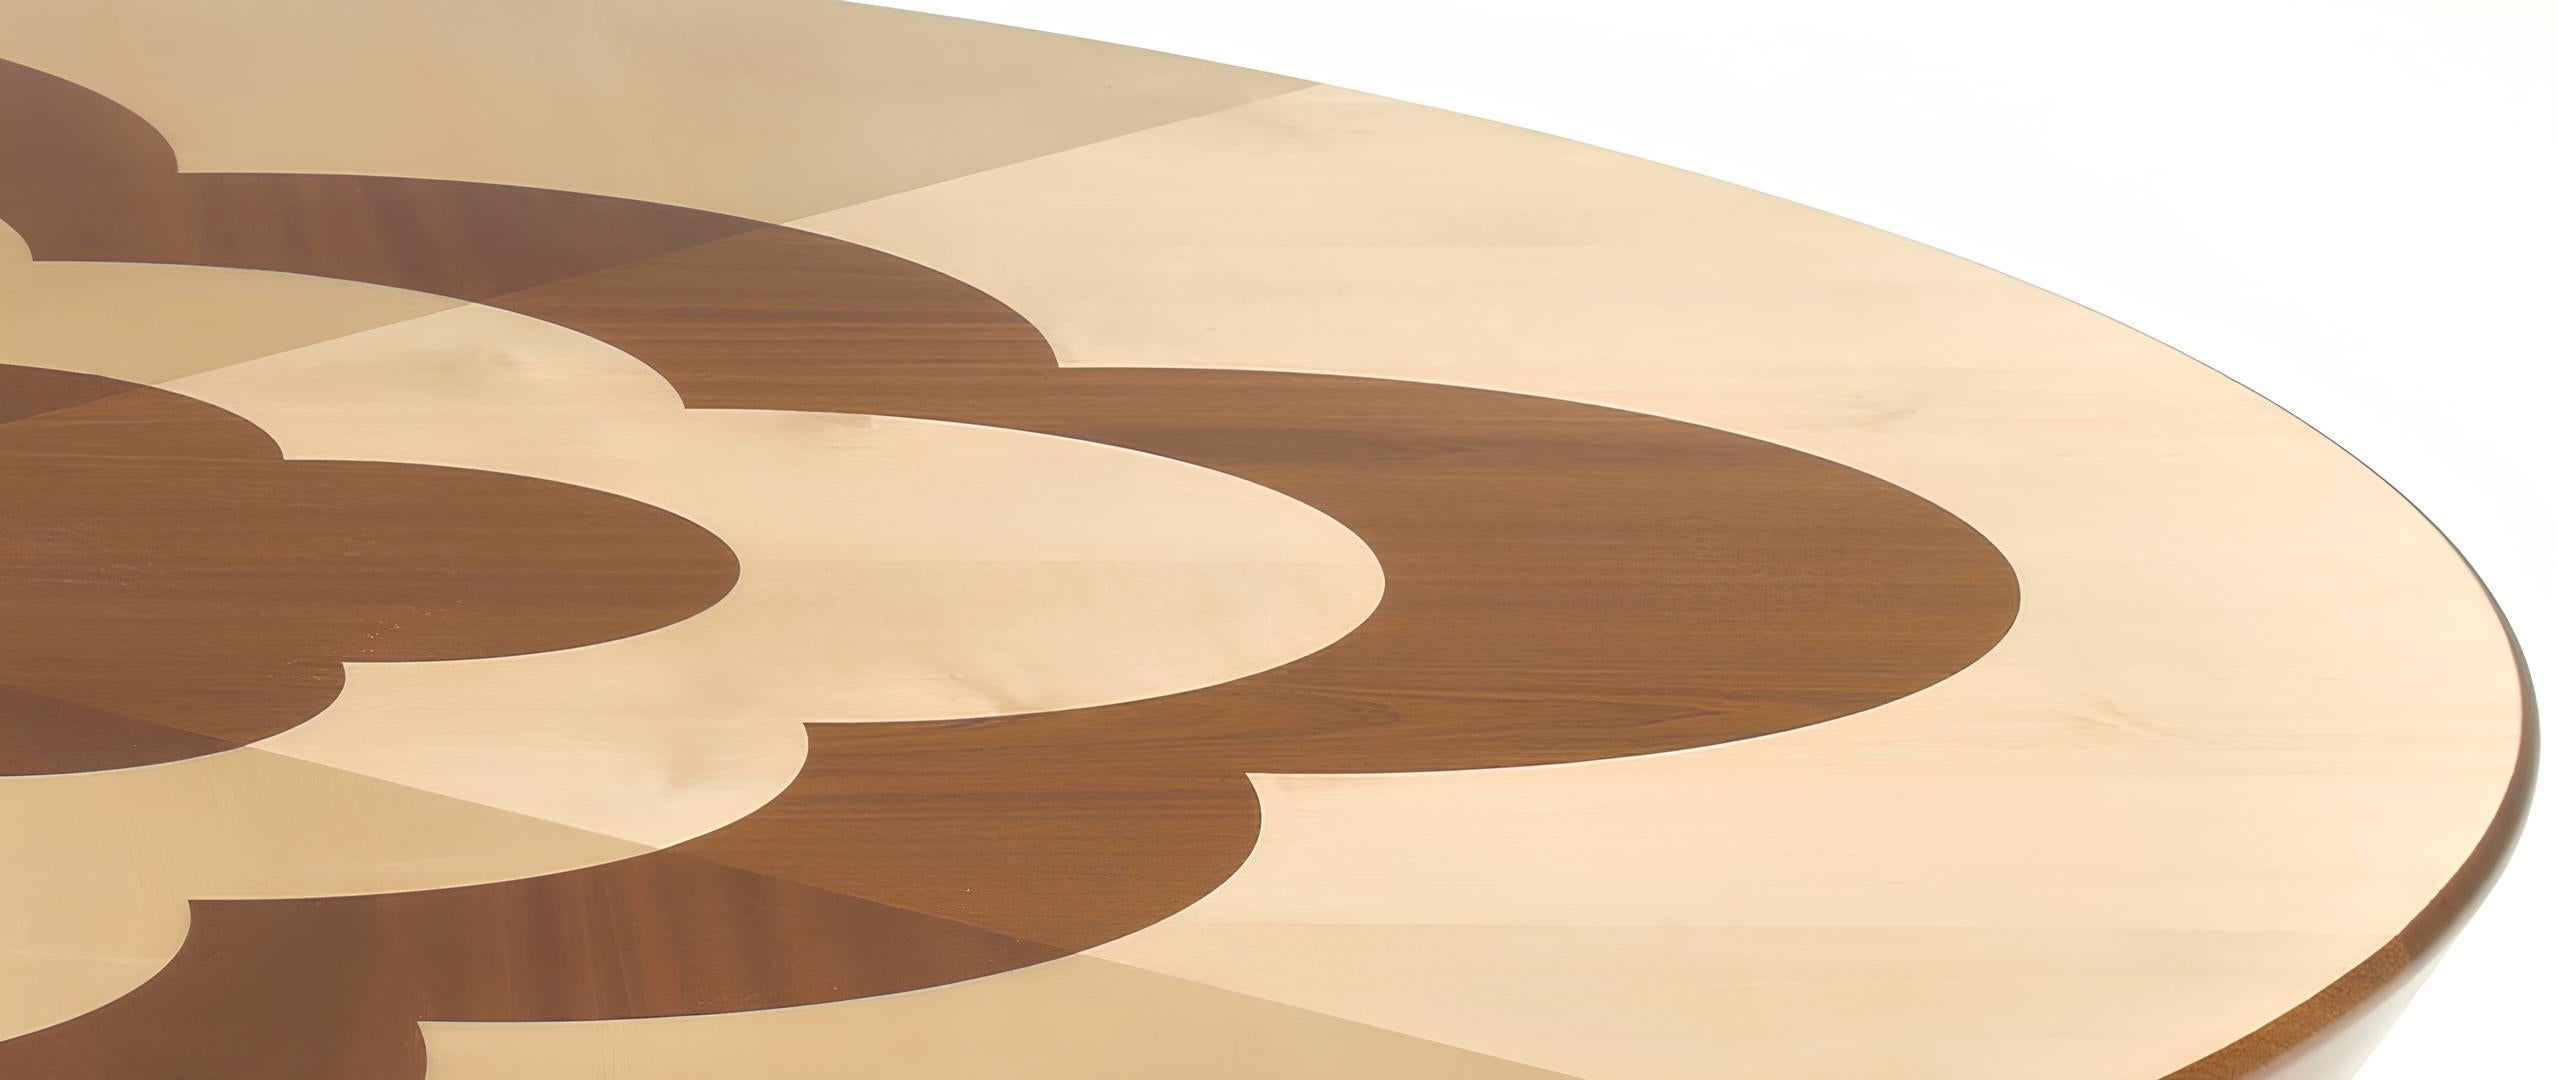 Archway CT est une table à cocktail conçue par le designer argentin Cristián Mohaded en 2022. Fabriquée avec une attention méticuleuse aux détails, cette table ronde est fabriquée en bois massif d'acajou et d'érable, et présente une marqueterie